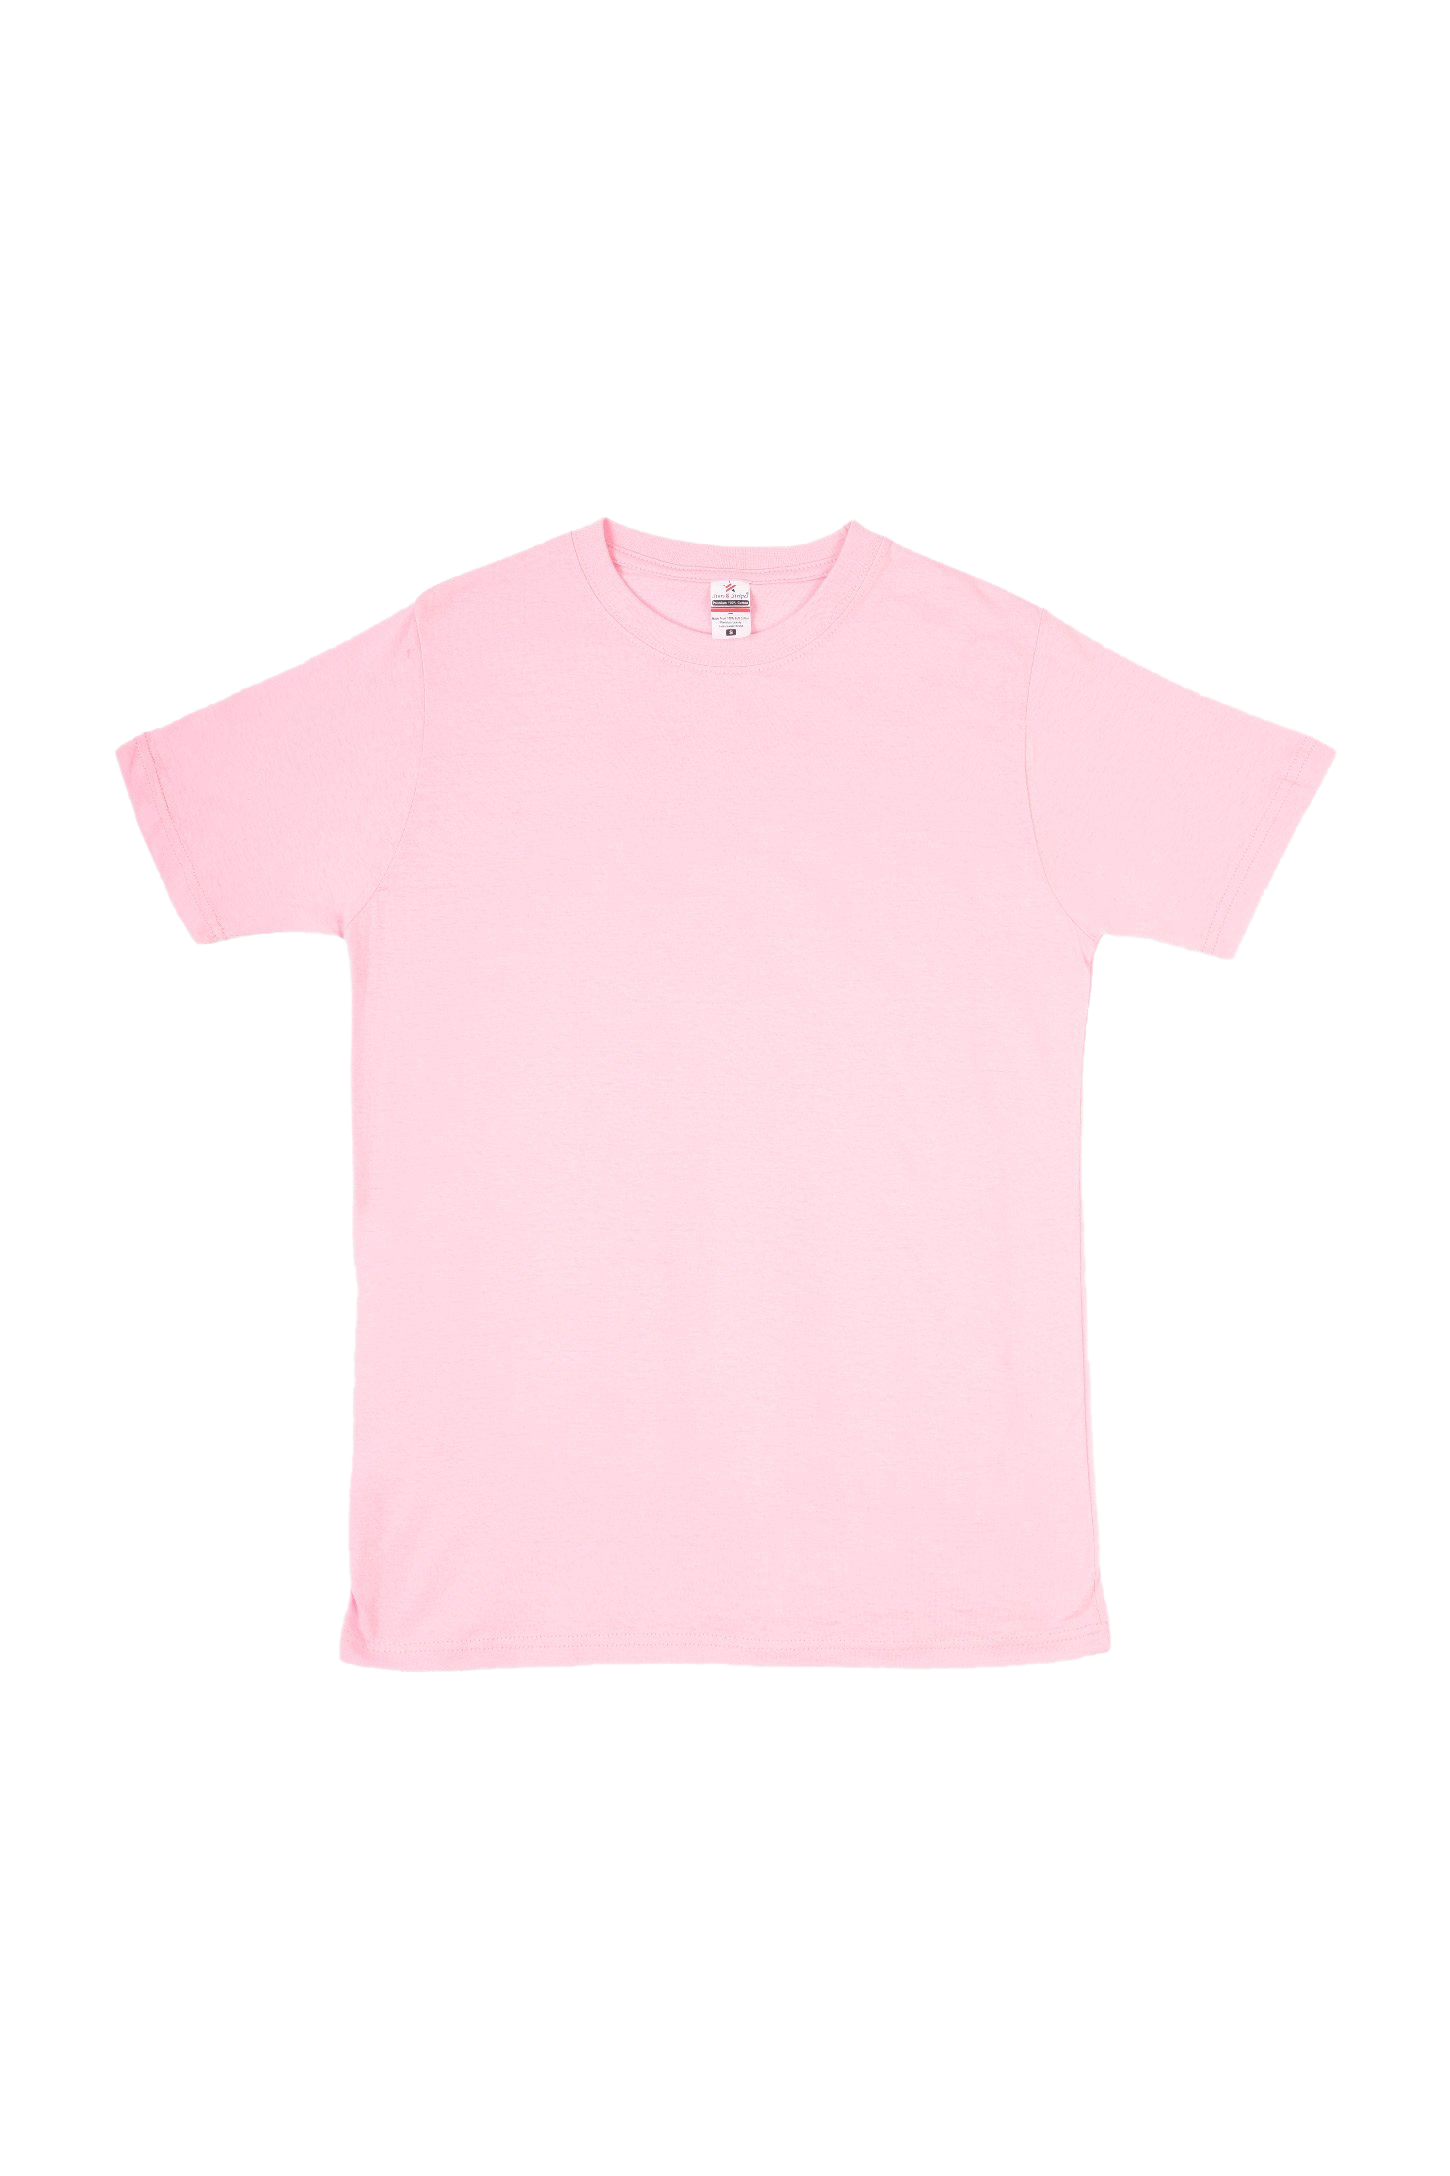 Простая розовая футболка PNG высококачественное изображение